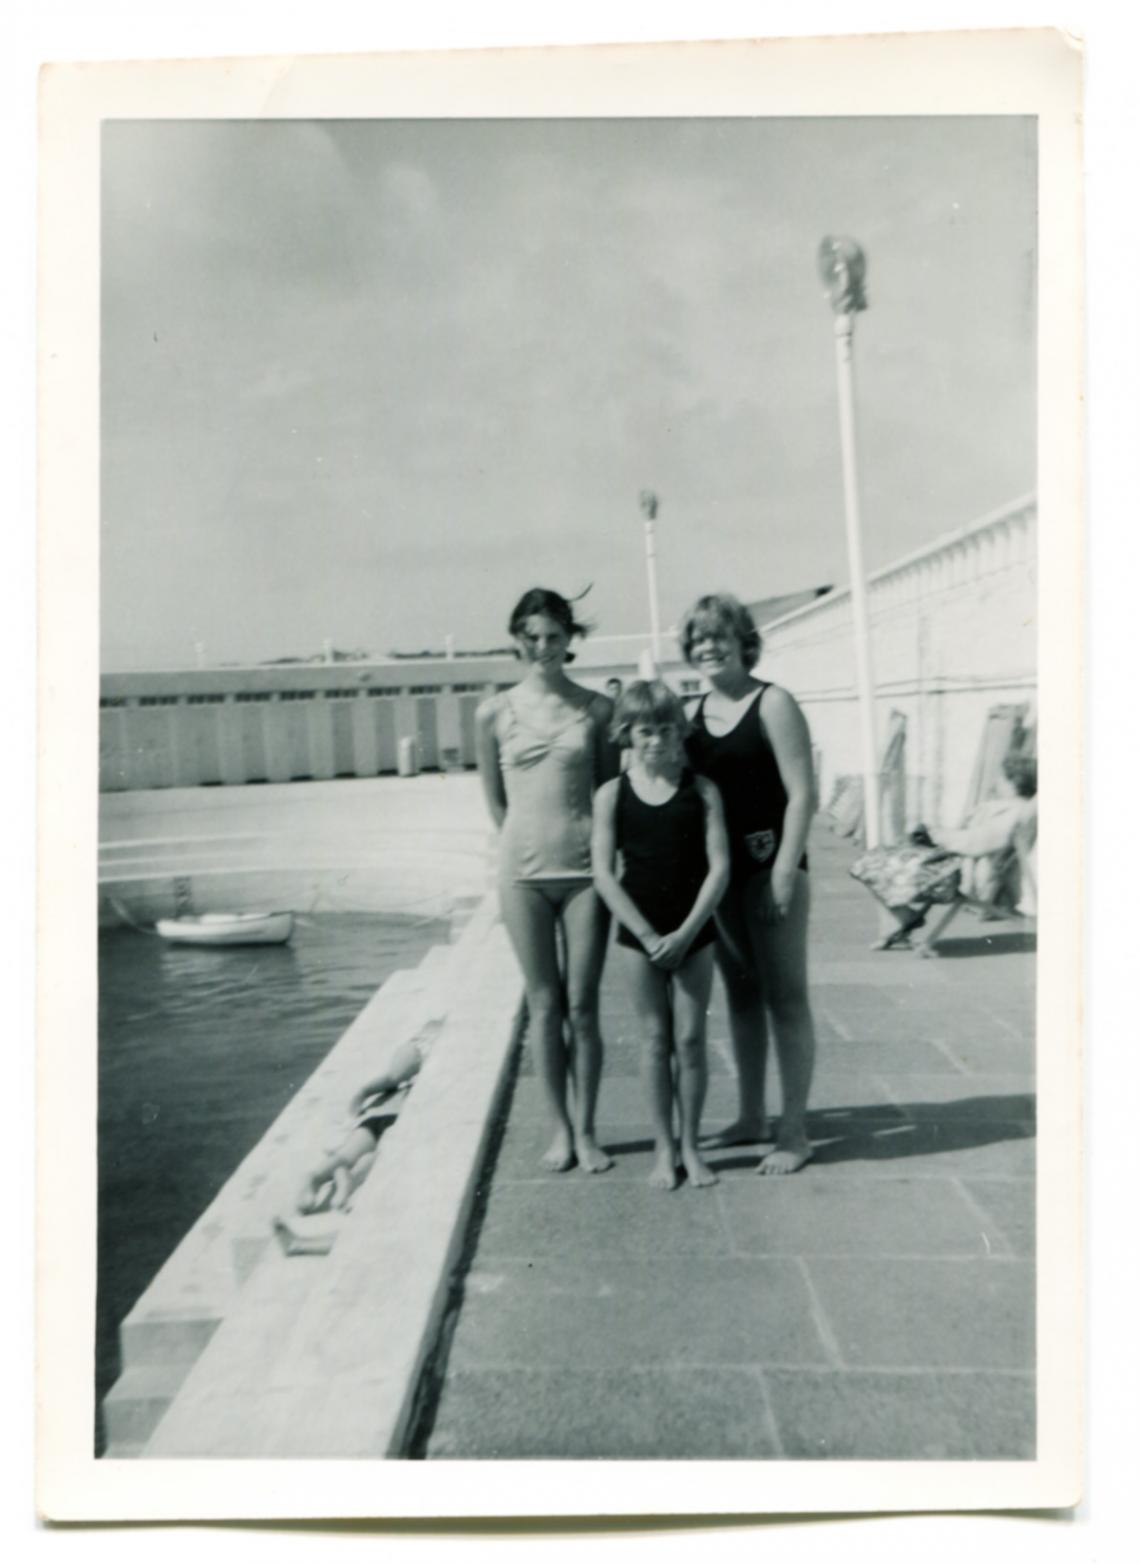 Ruth Trevenen, Judith Tresidder and a younger girl, Liz Jilbert, at Jubilee Pool